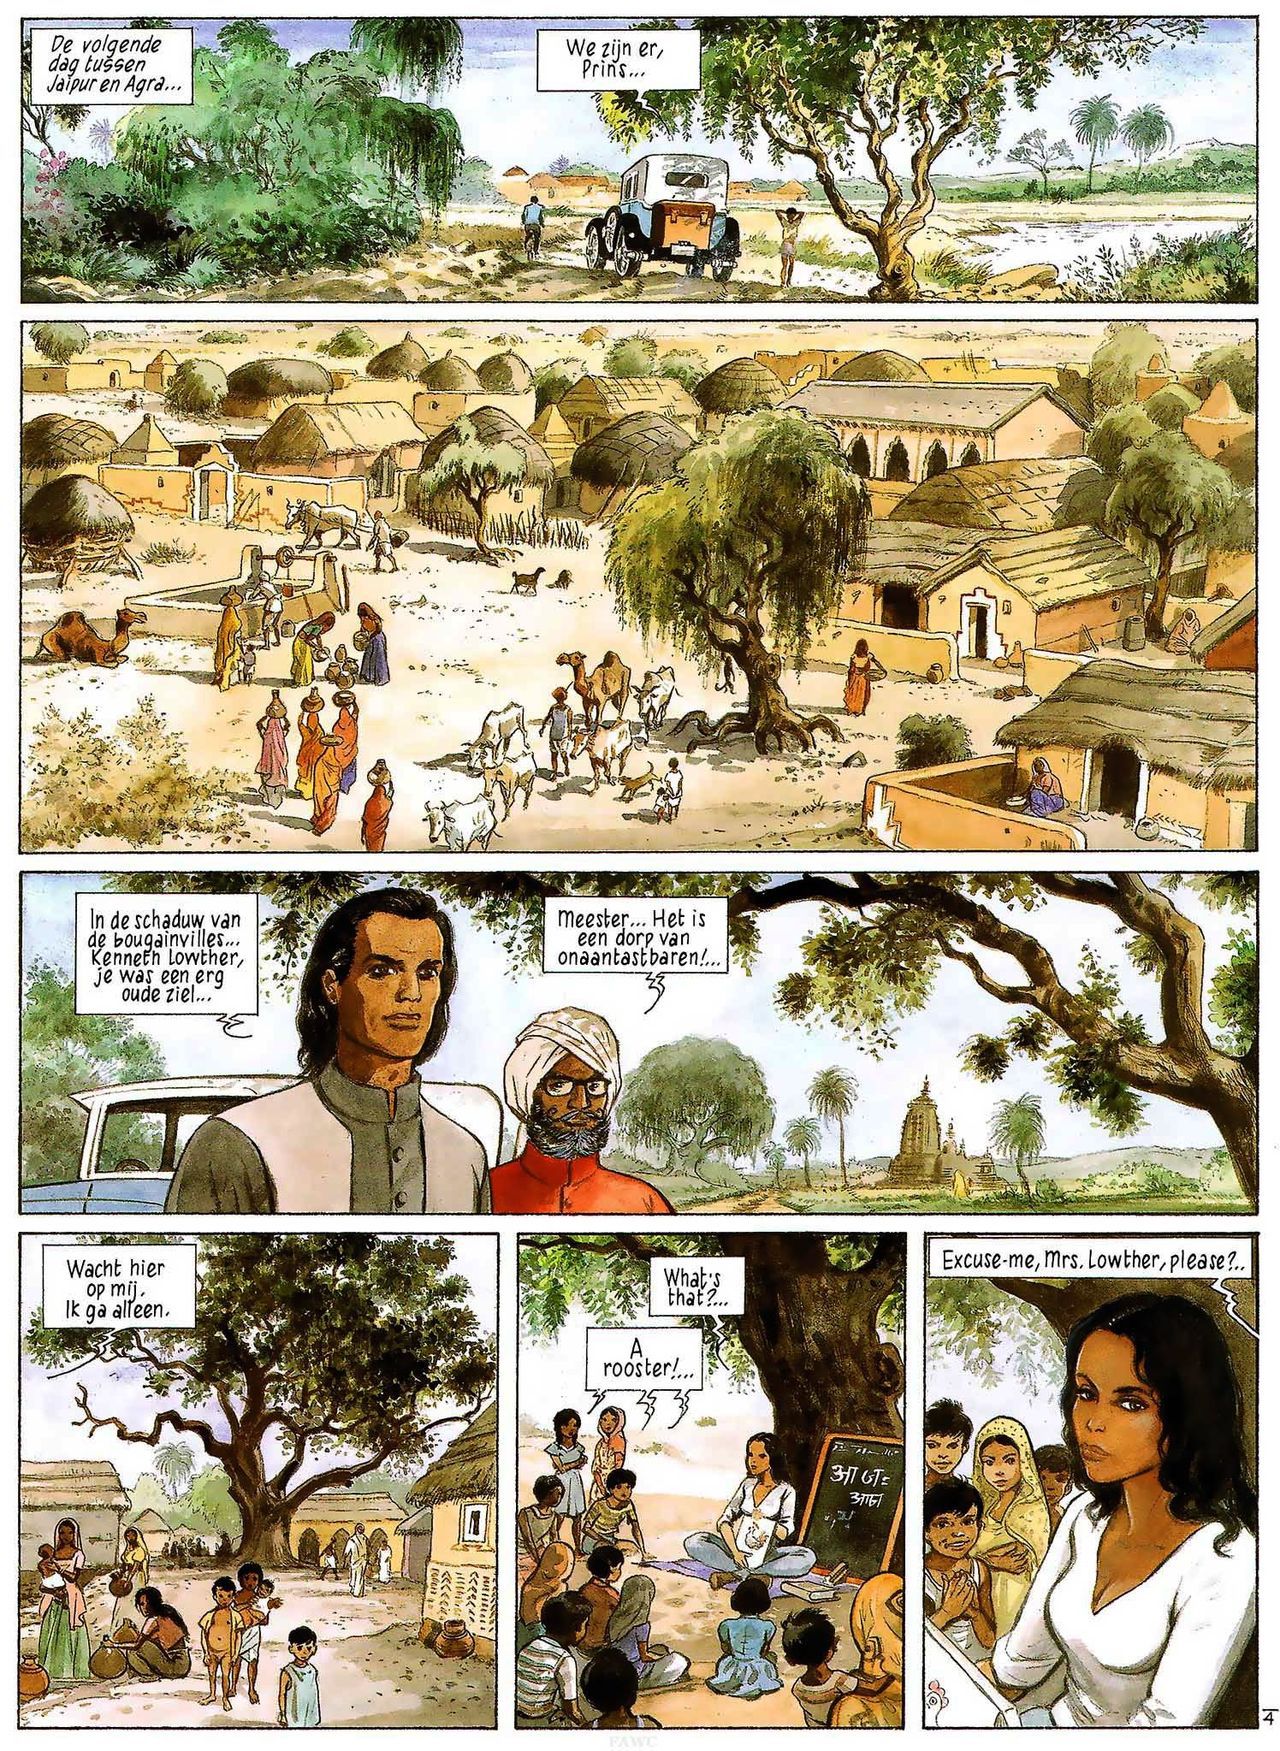 India Dreams - 03 - In De Schaduw Van De Bougainvilles (Dutch) Engelstalige en Duitse strips die op deze site staan, hier is de Nederlandse uitgave! 6